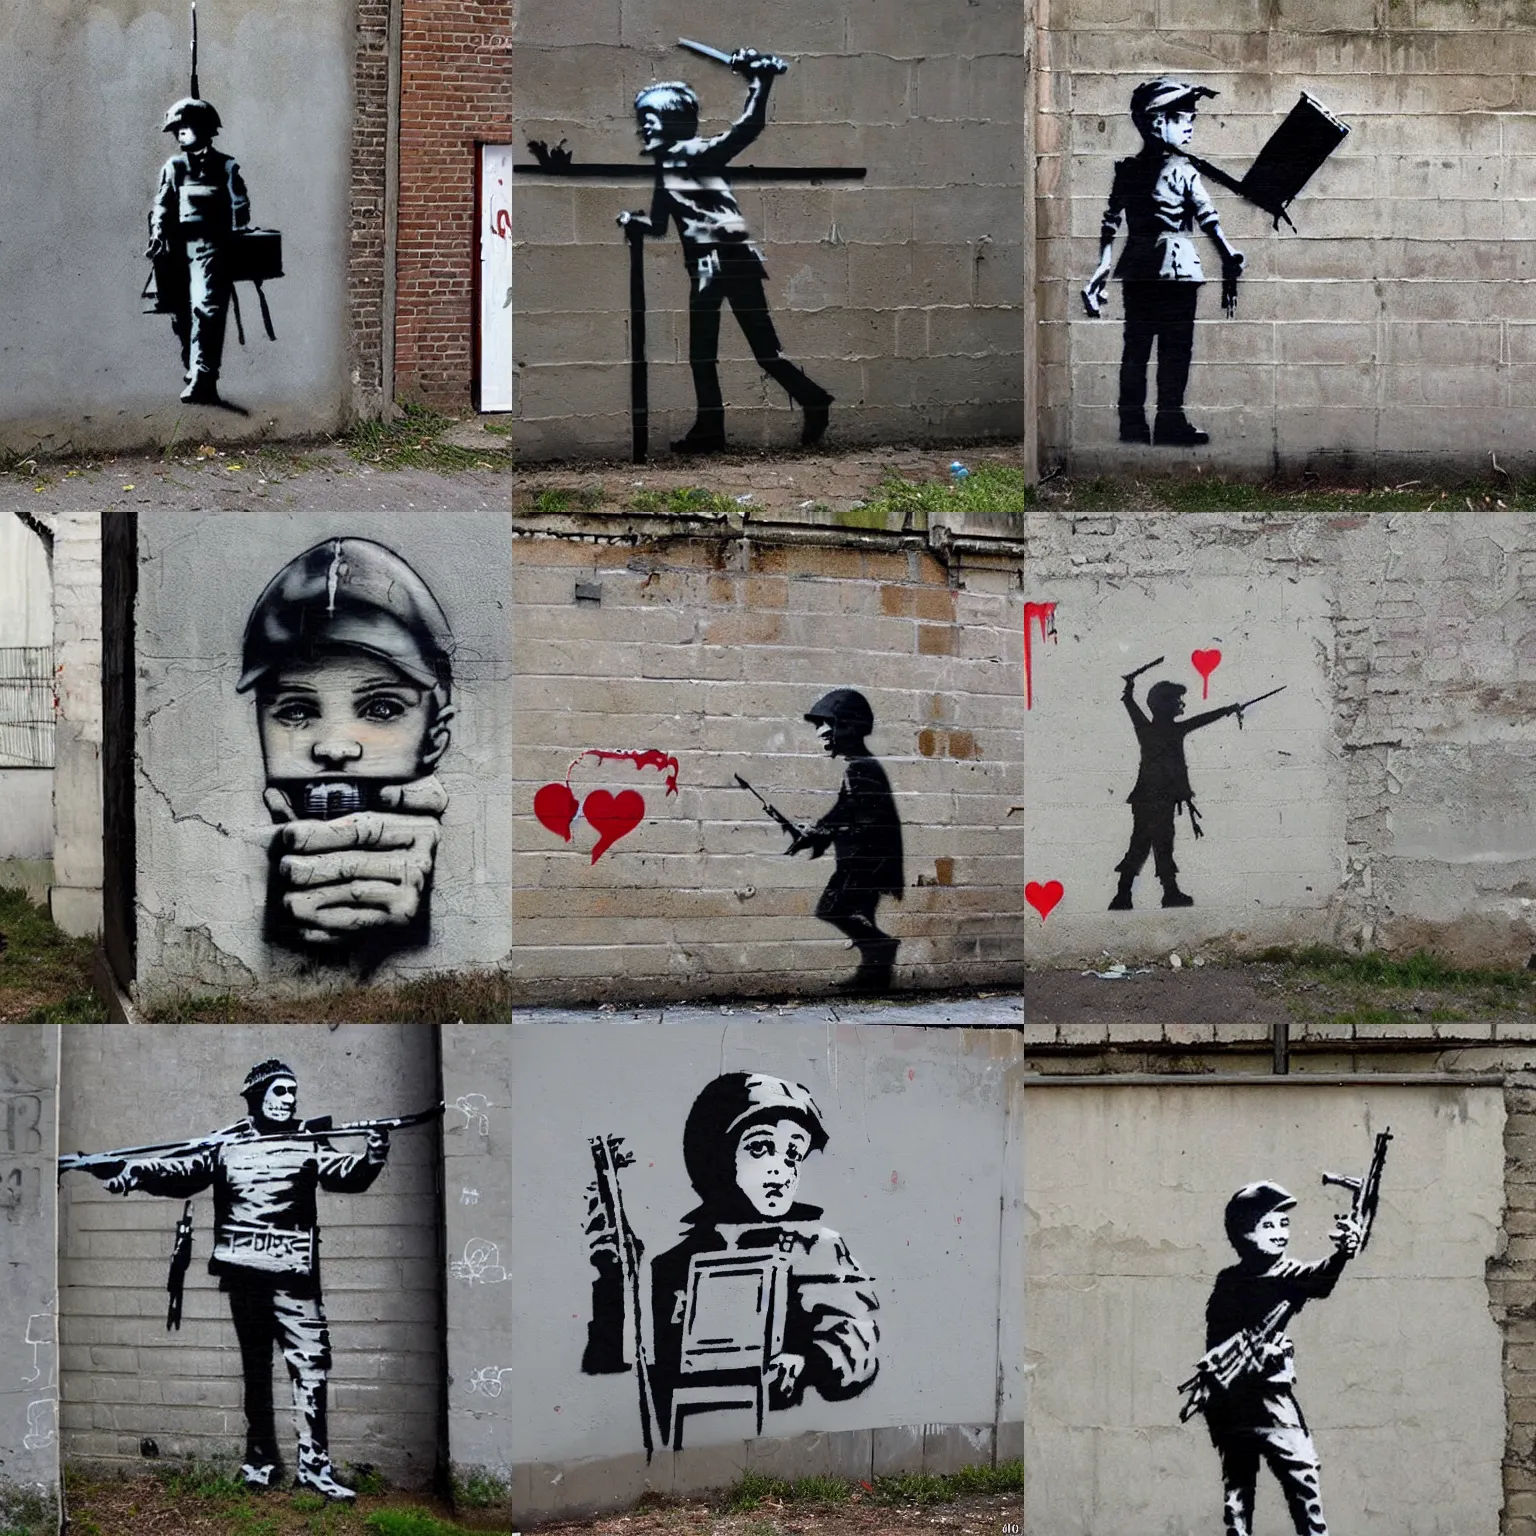 Prompt: Street art by Banksy of the Ukrainian War